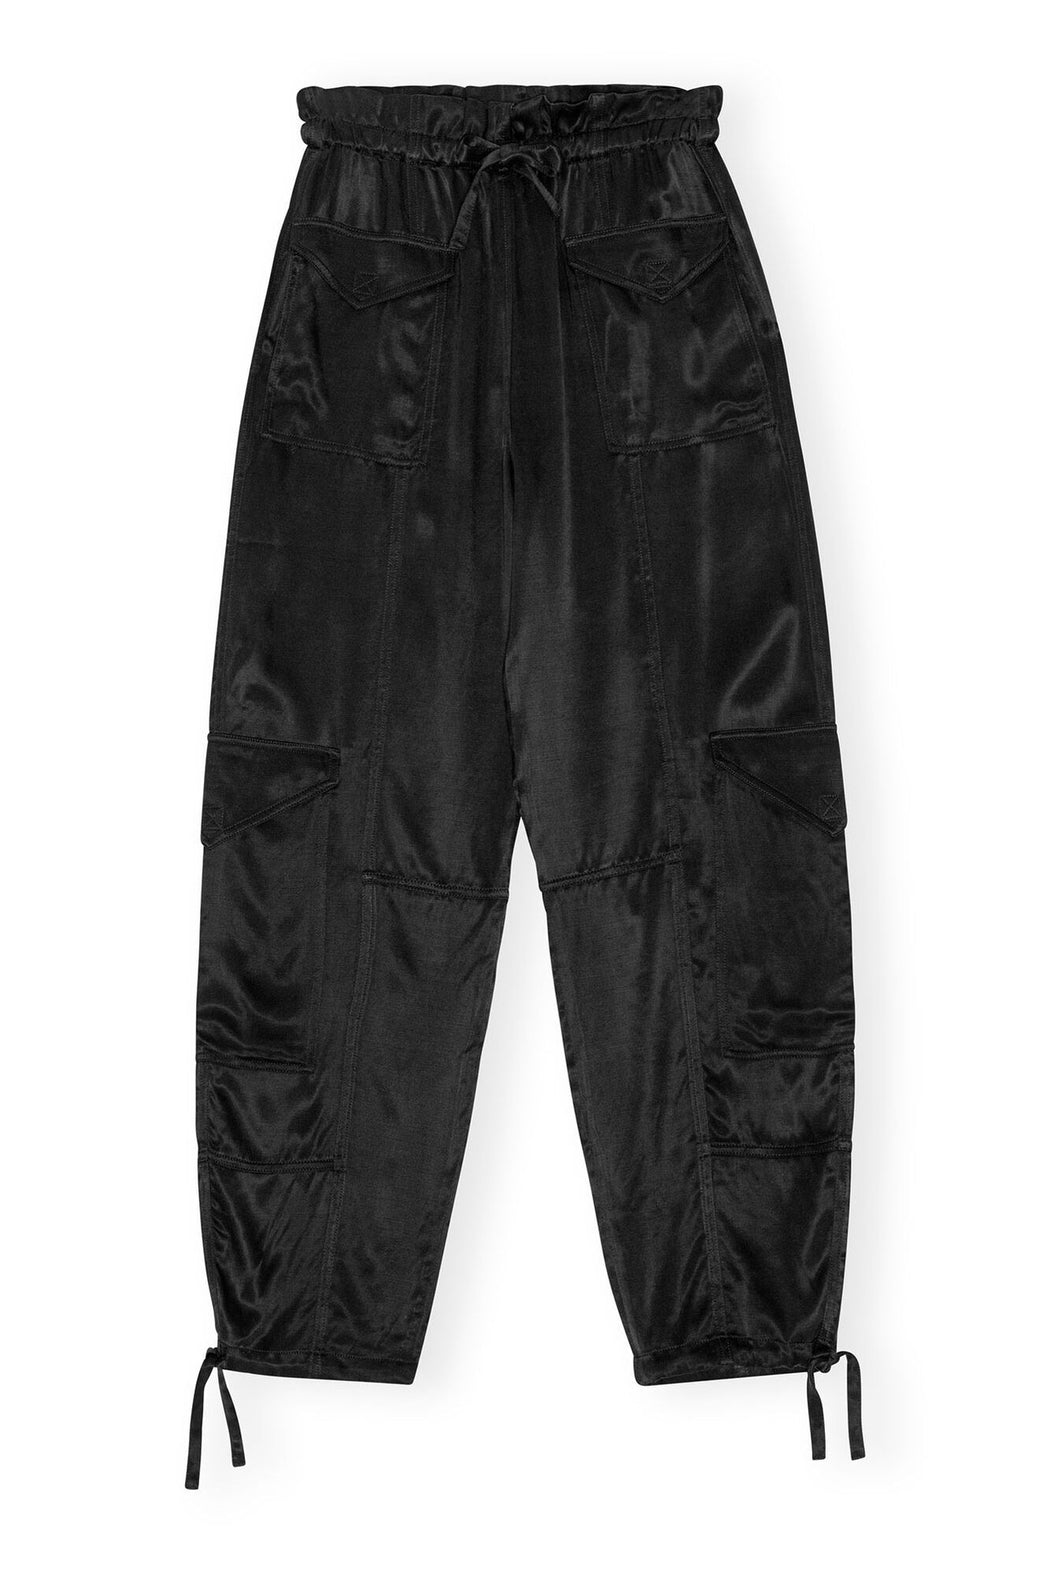 GANNI - Black Washed Satin Pocket Pants